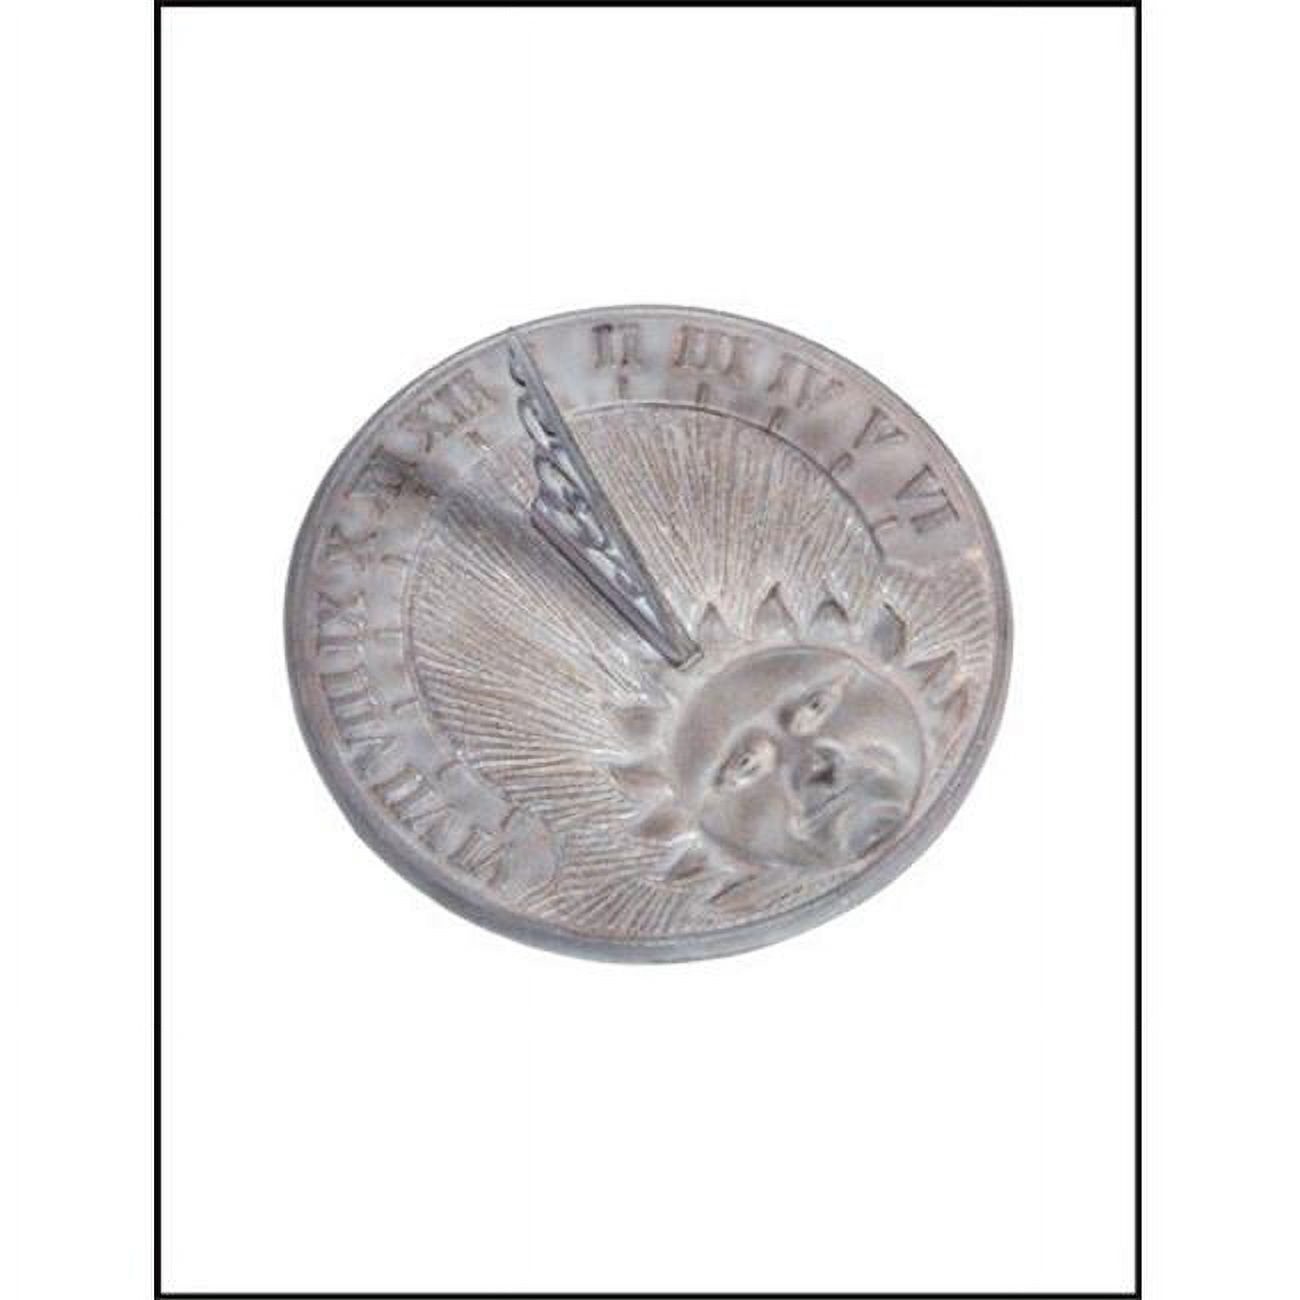 Rome Cast Iron Daybreak Sundial, Verdigris, 9.875" dia. - image 1 of 2